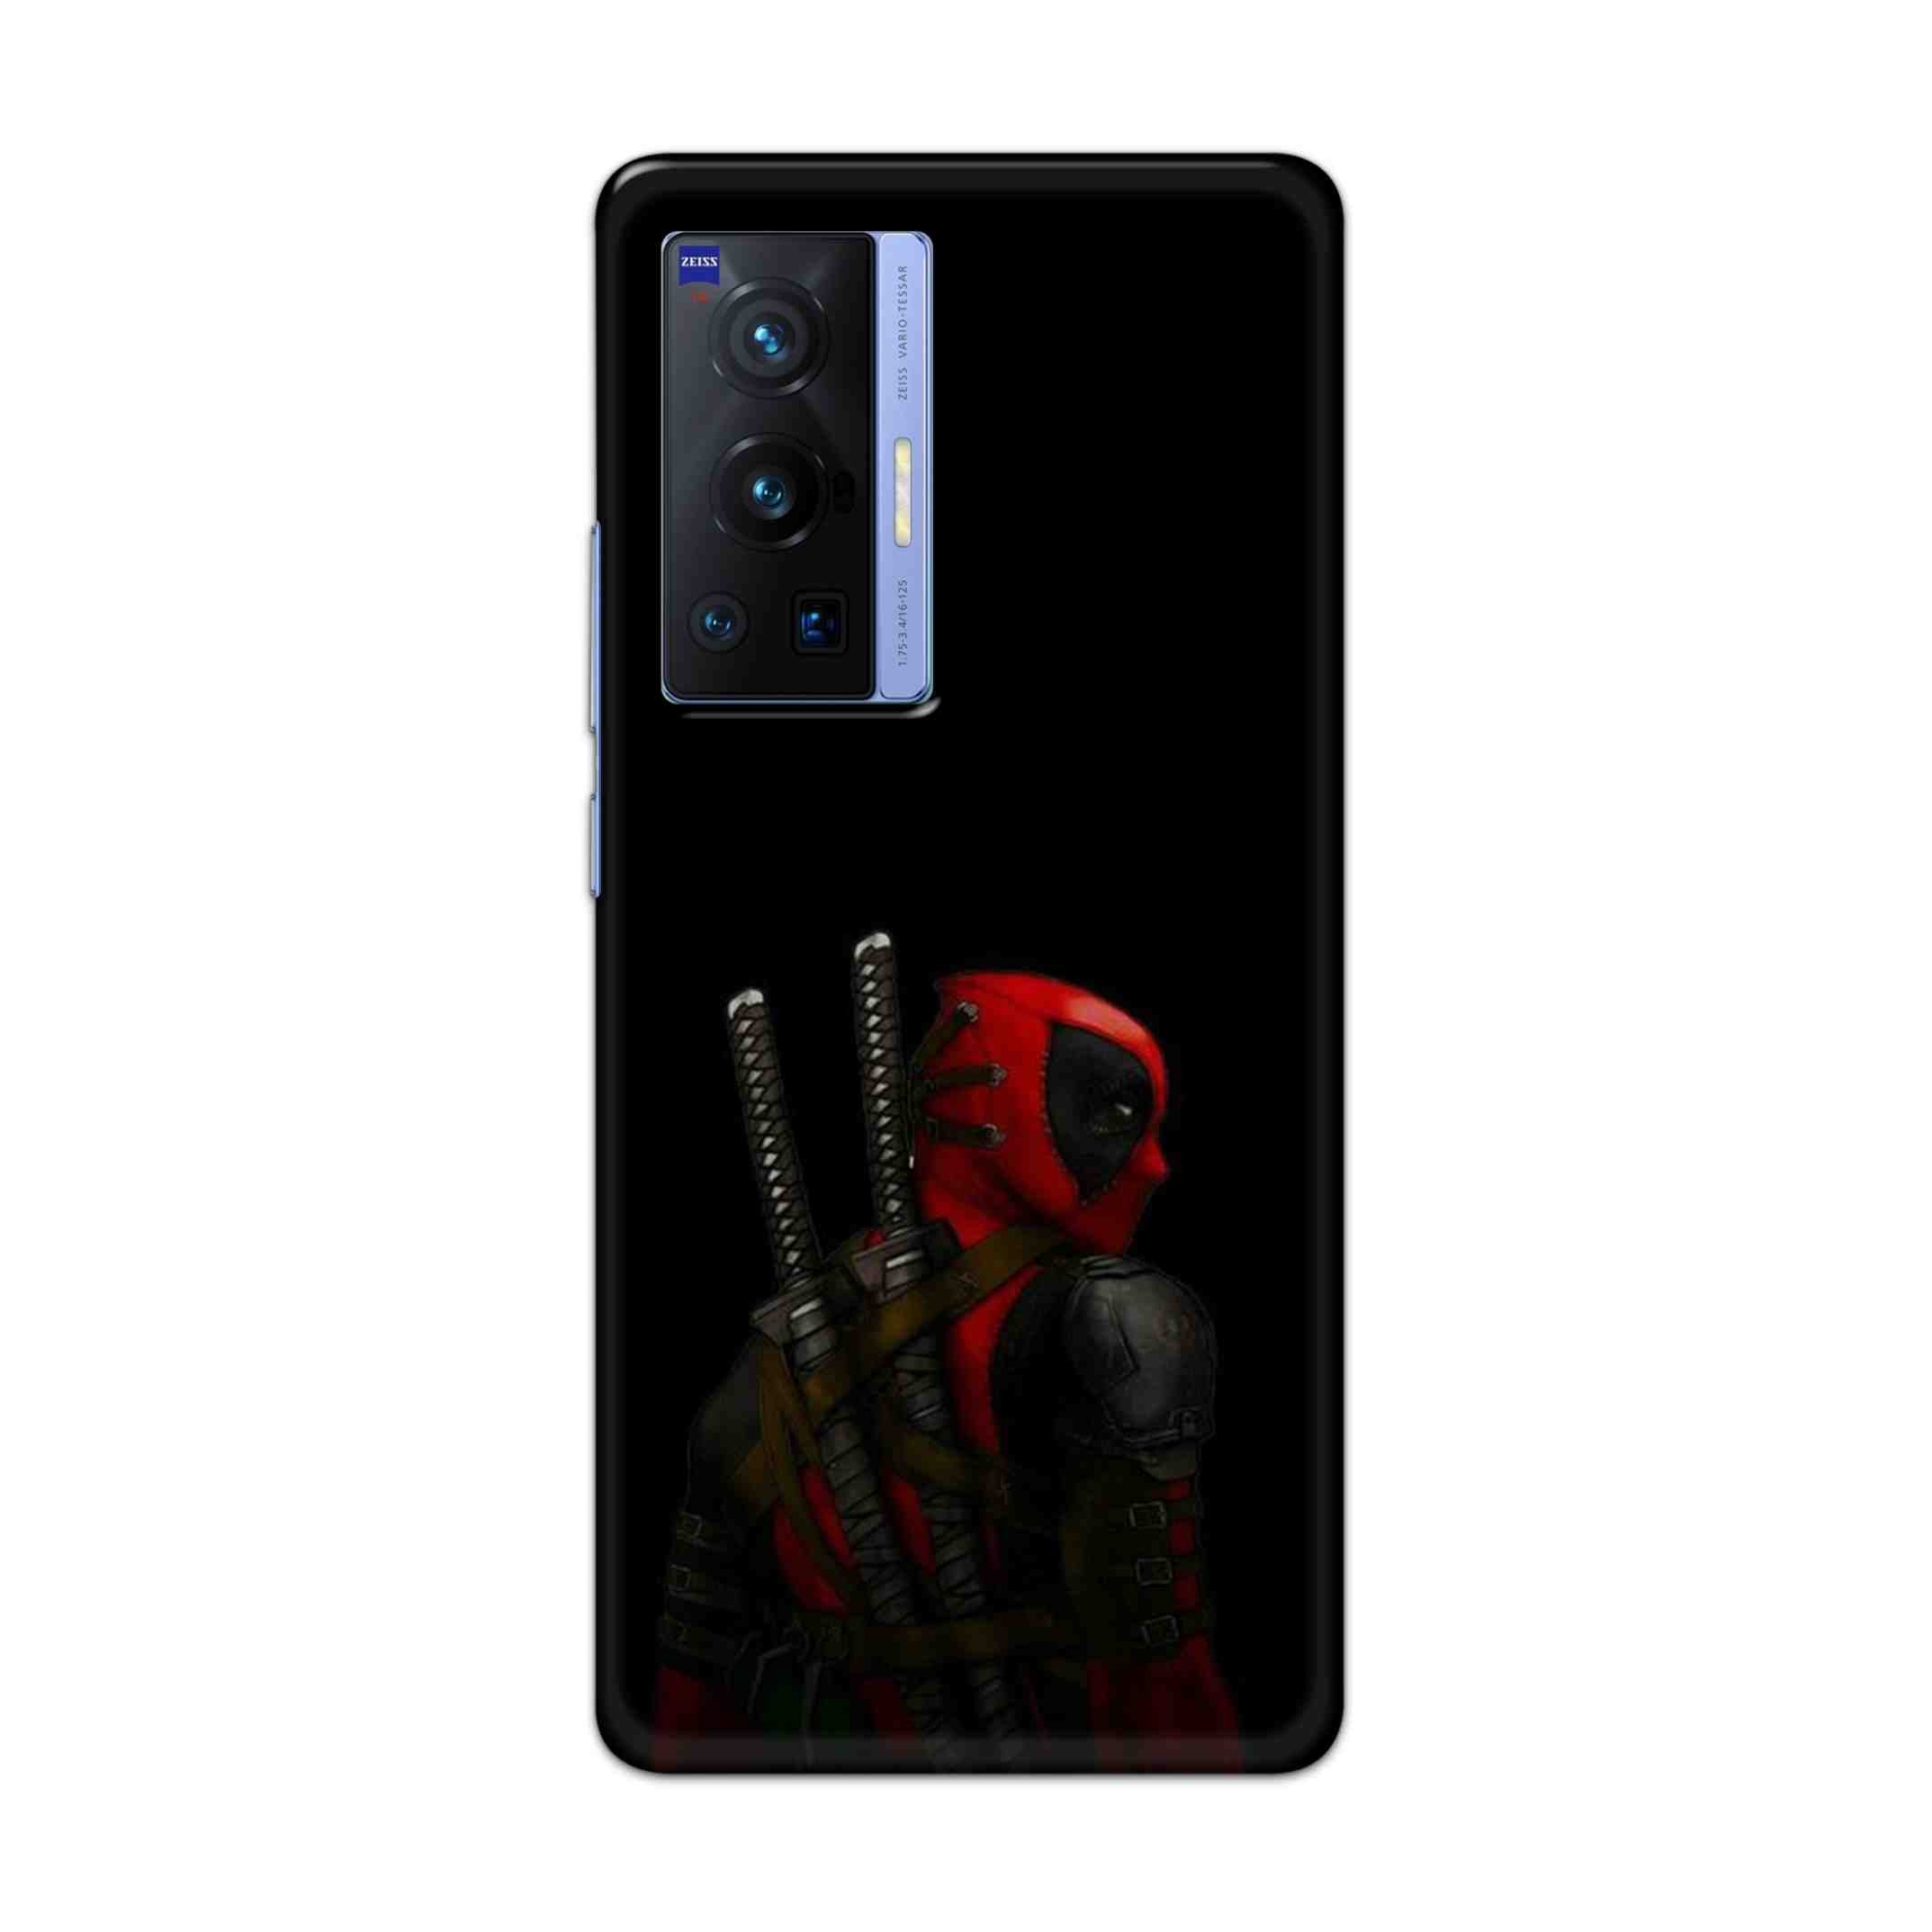 Buy Deadpool Hard Back Mobile Phone Case Cover For Vivo X70 Pro Online